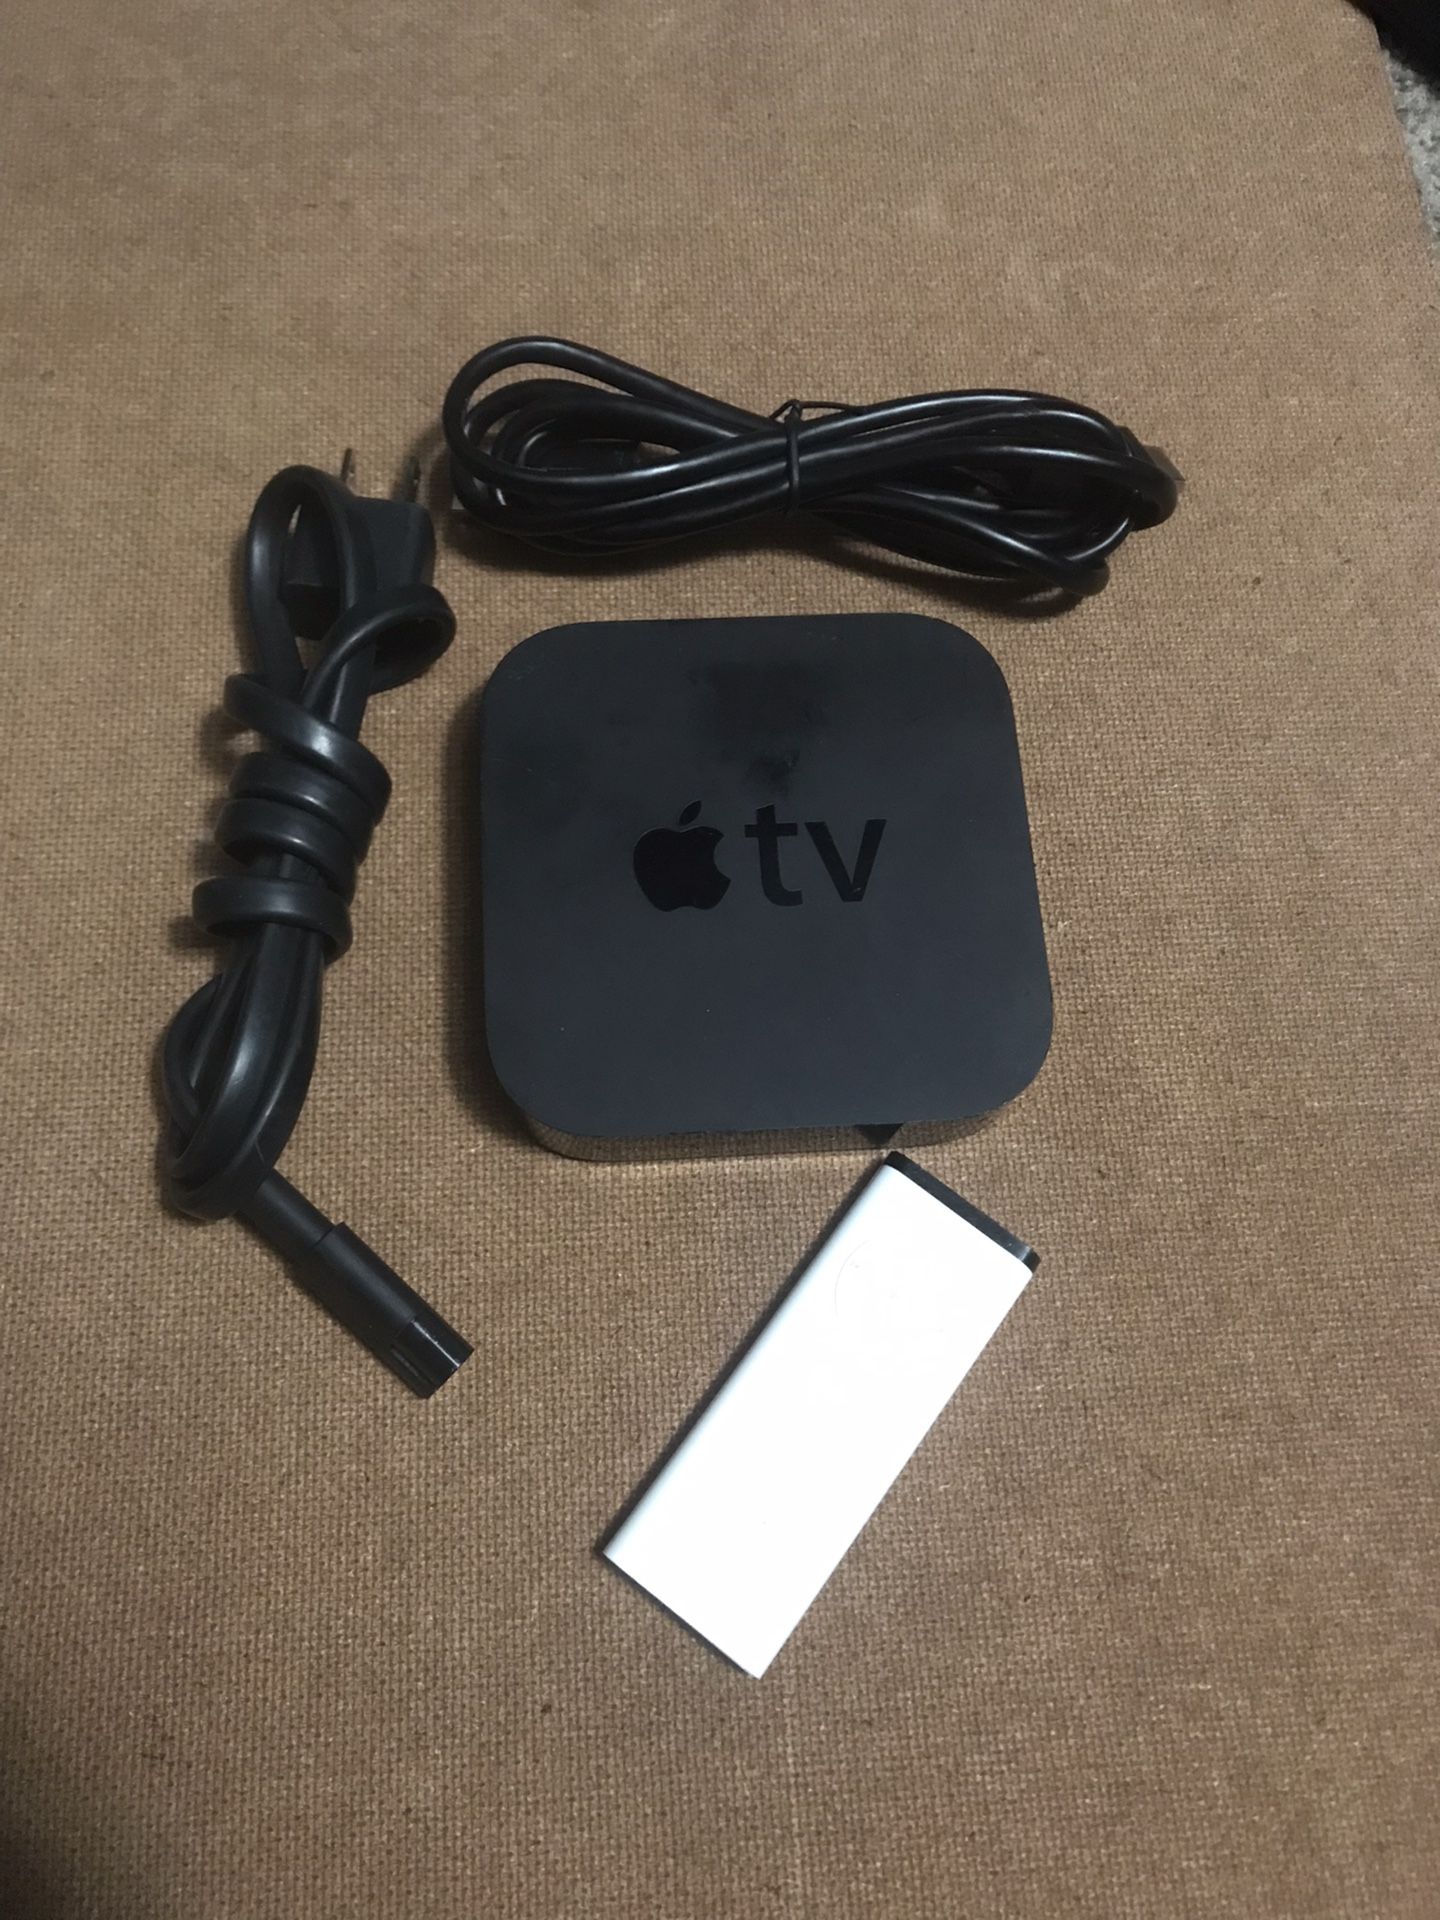 Apple Tv 3 Gen Streaming Device 